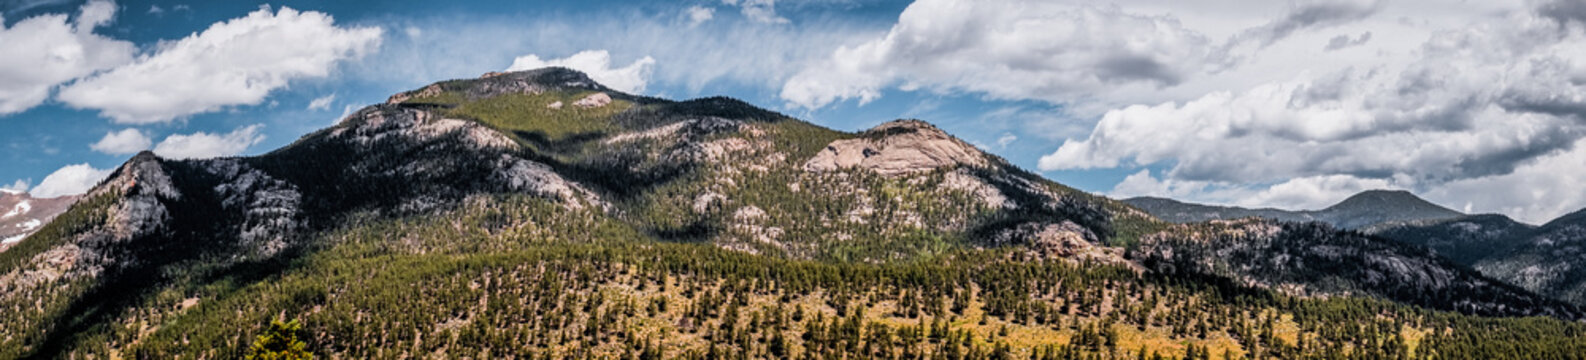 Rocky Mountains, mountain range, Colorado, USA